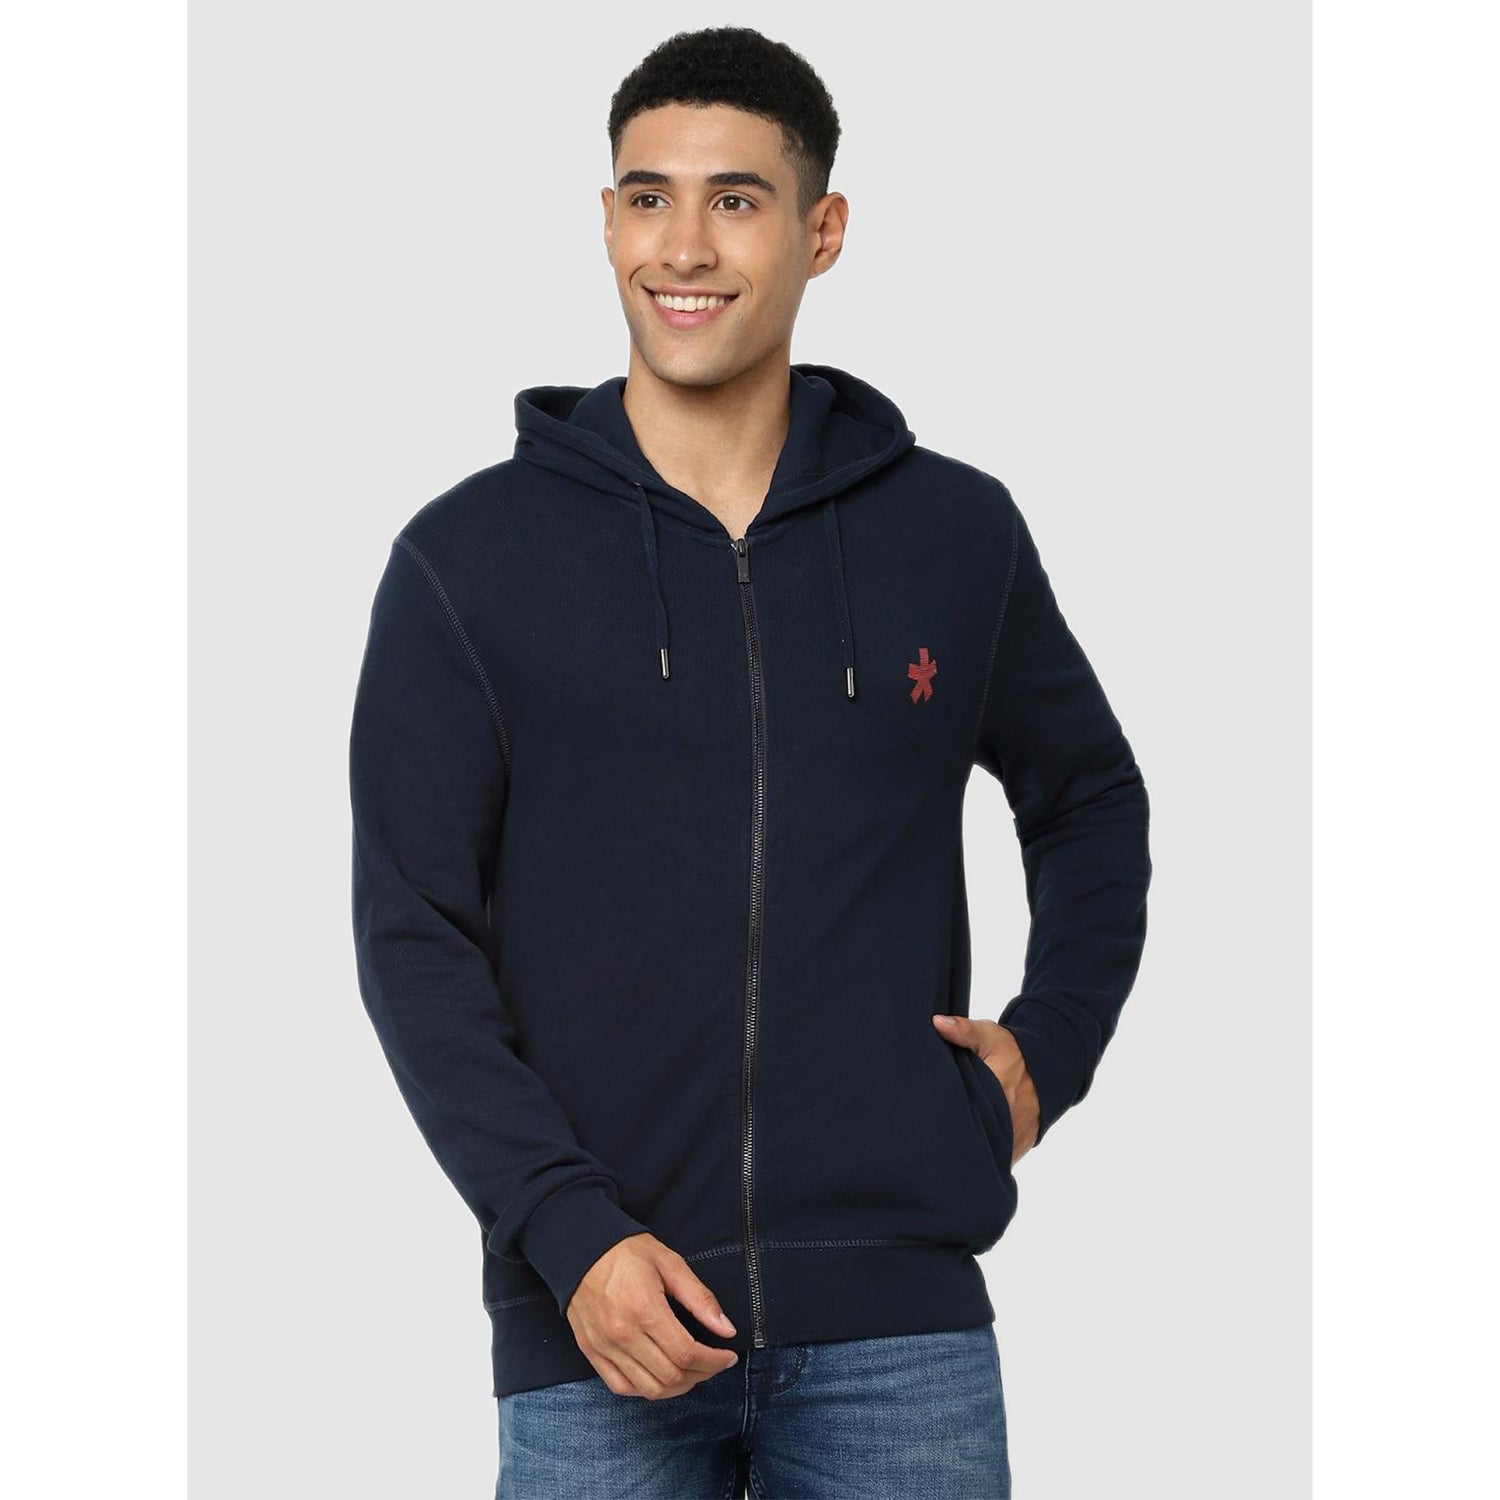 Navy Blue Hooded Sweatshirt (TEHOODIEIN)